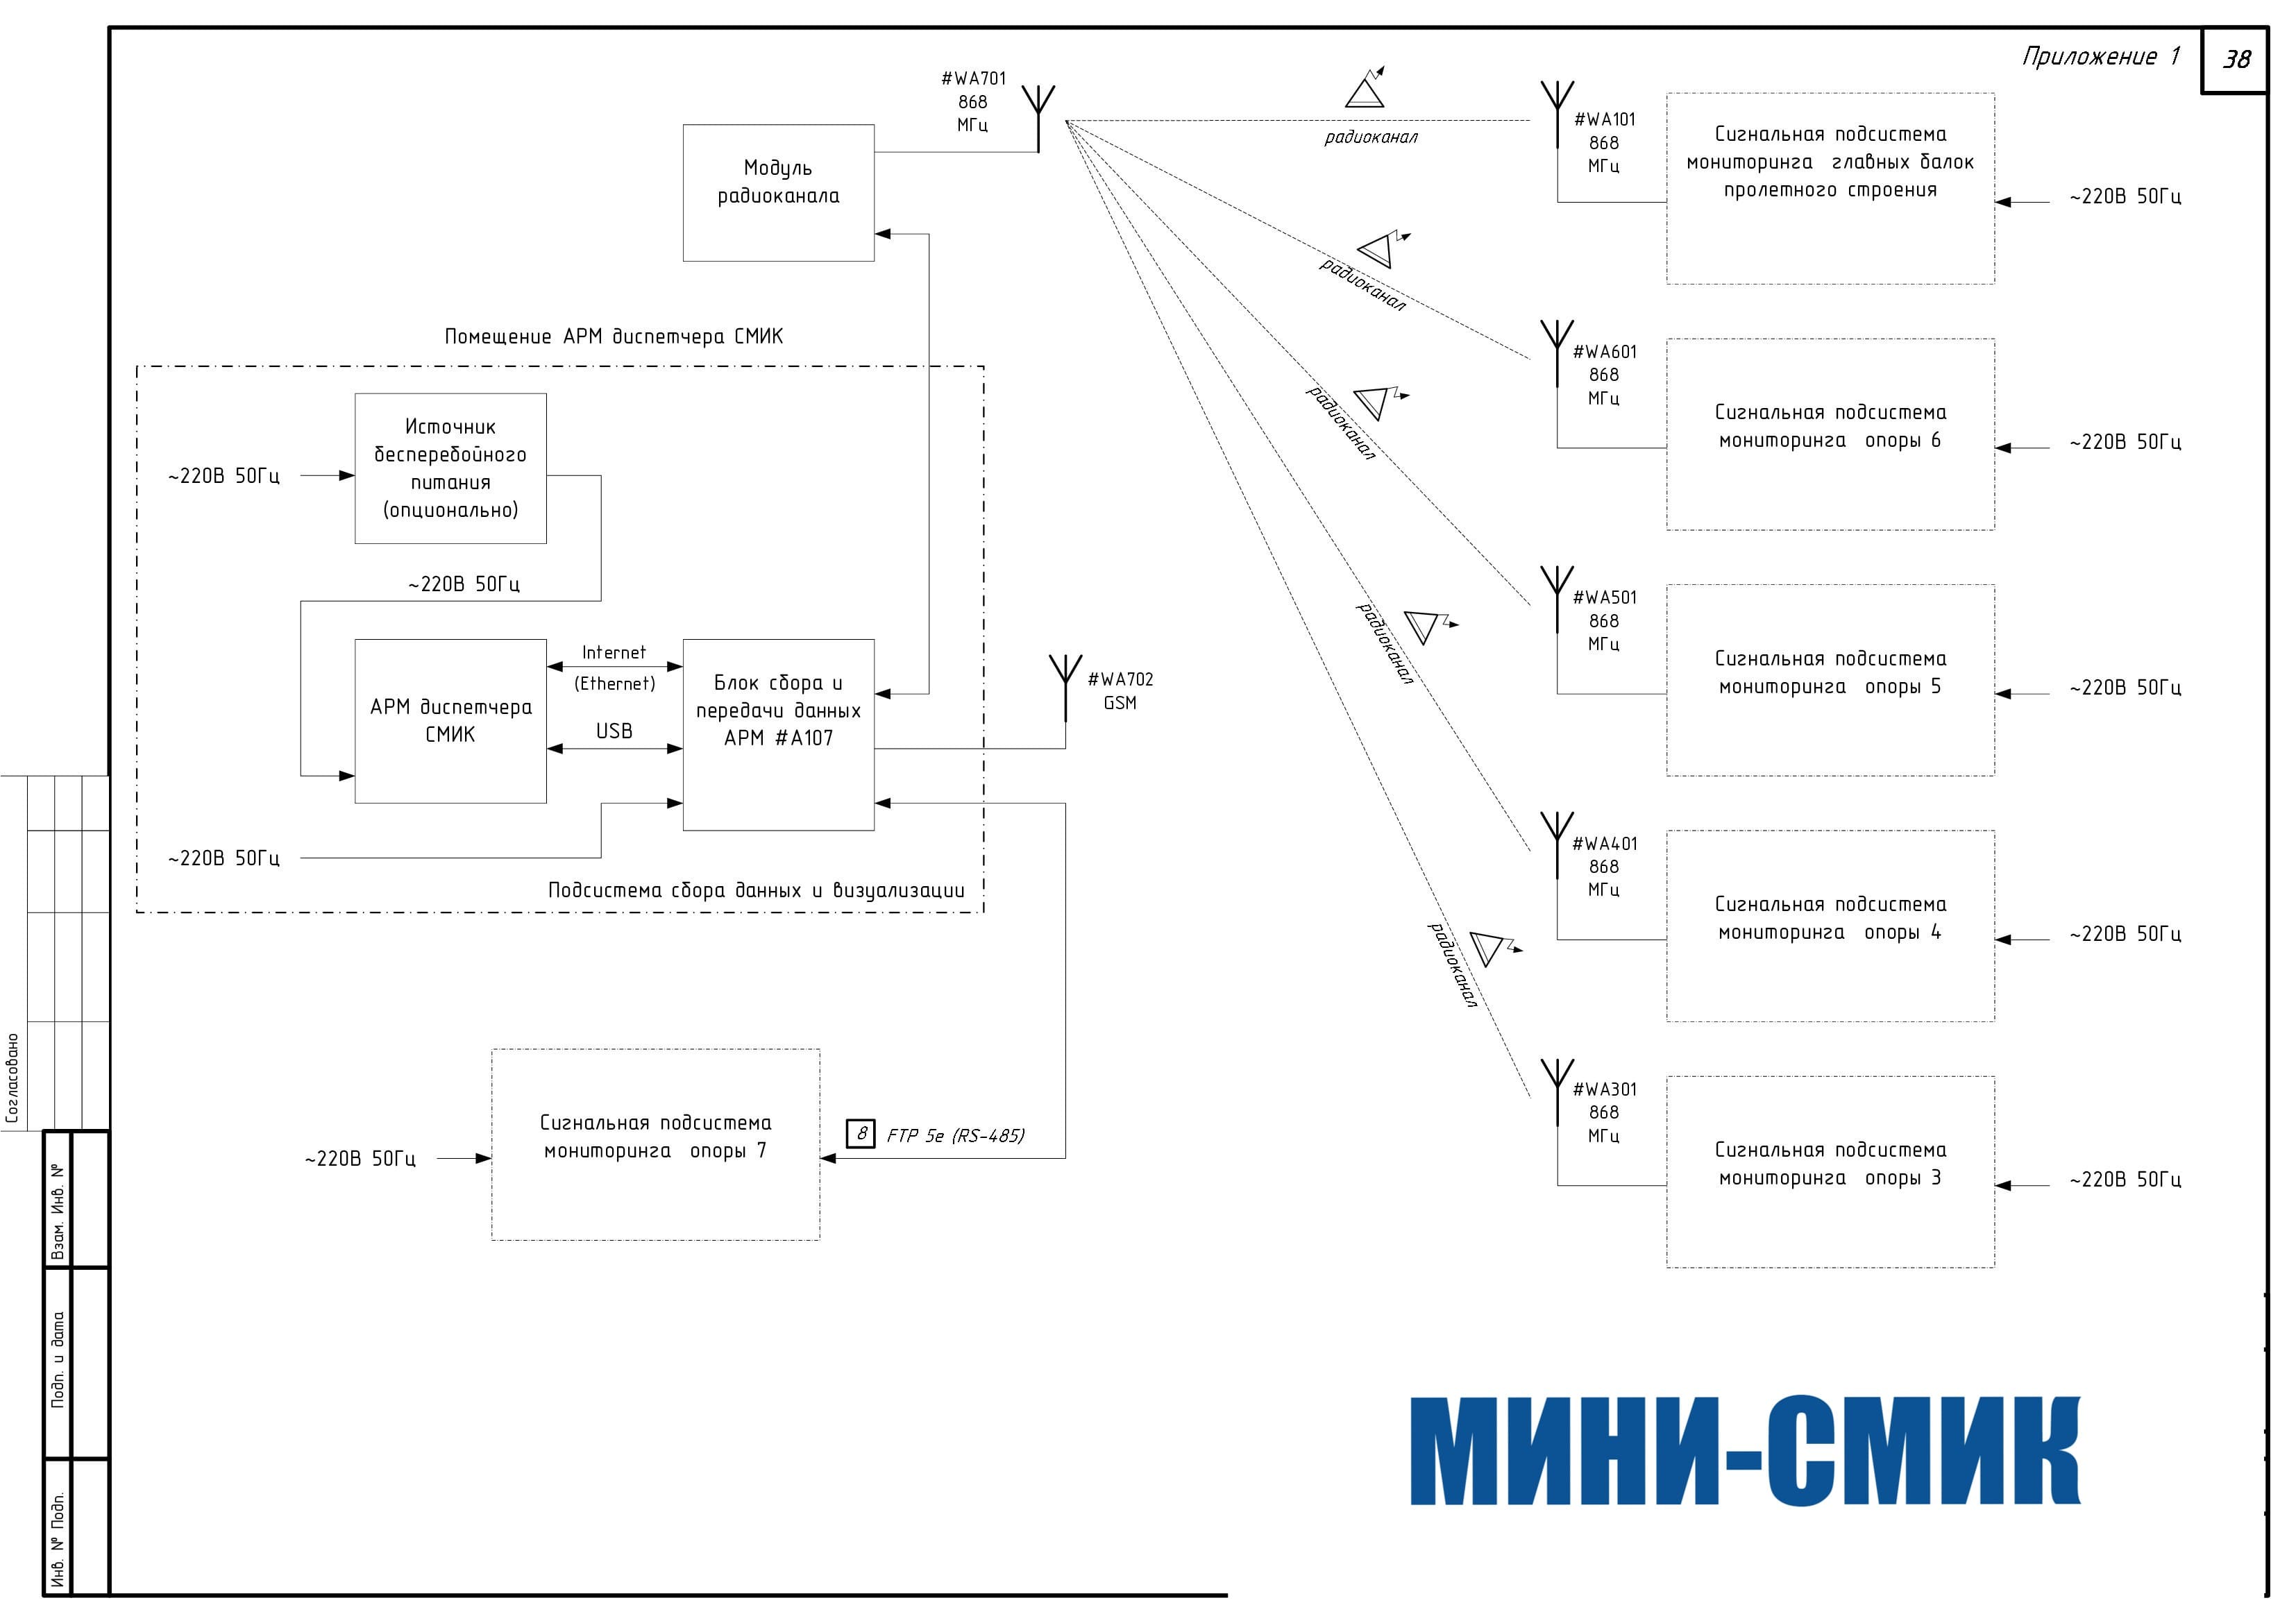 Пример структуры общей схемы автоматизированной системы мониторинга инженерных конструкций МИНИ-СМИК